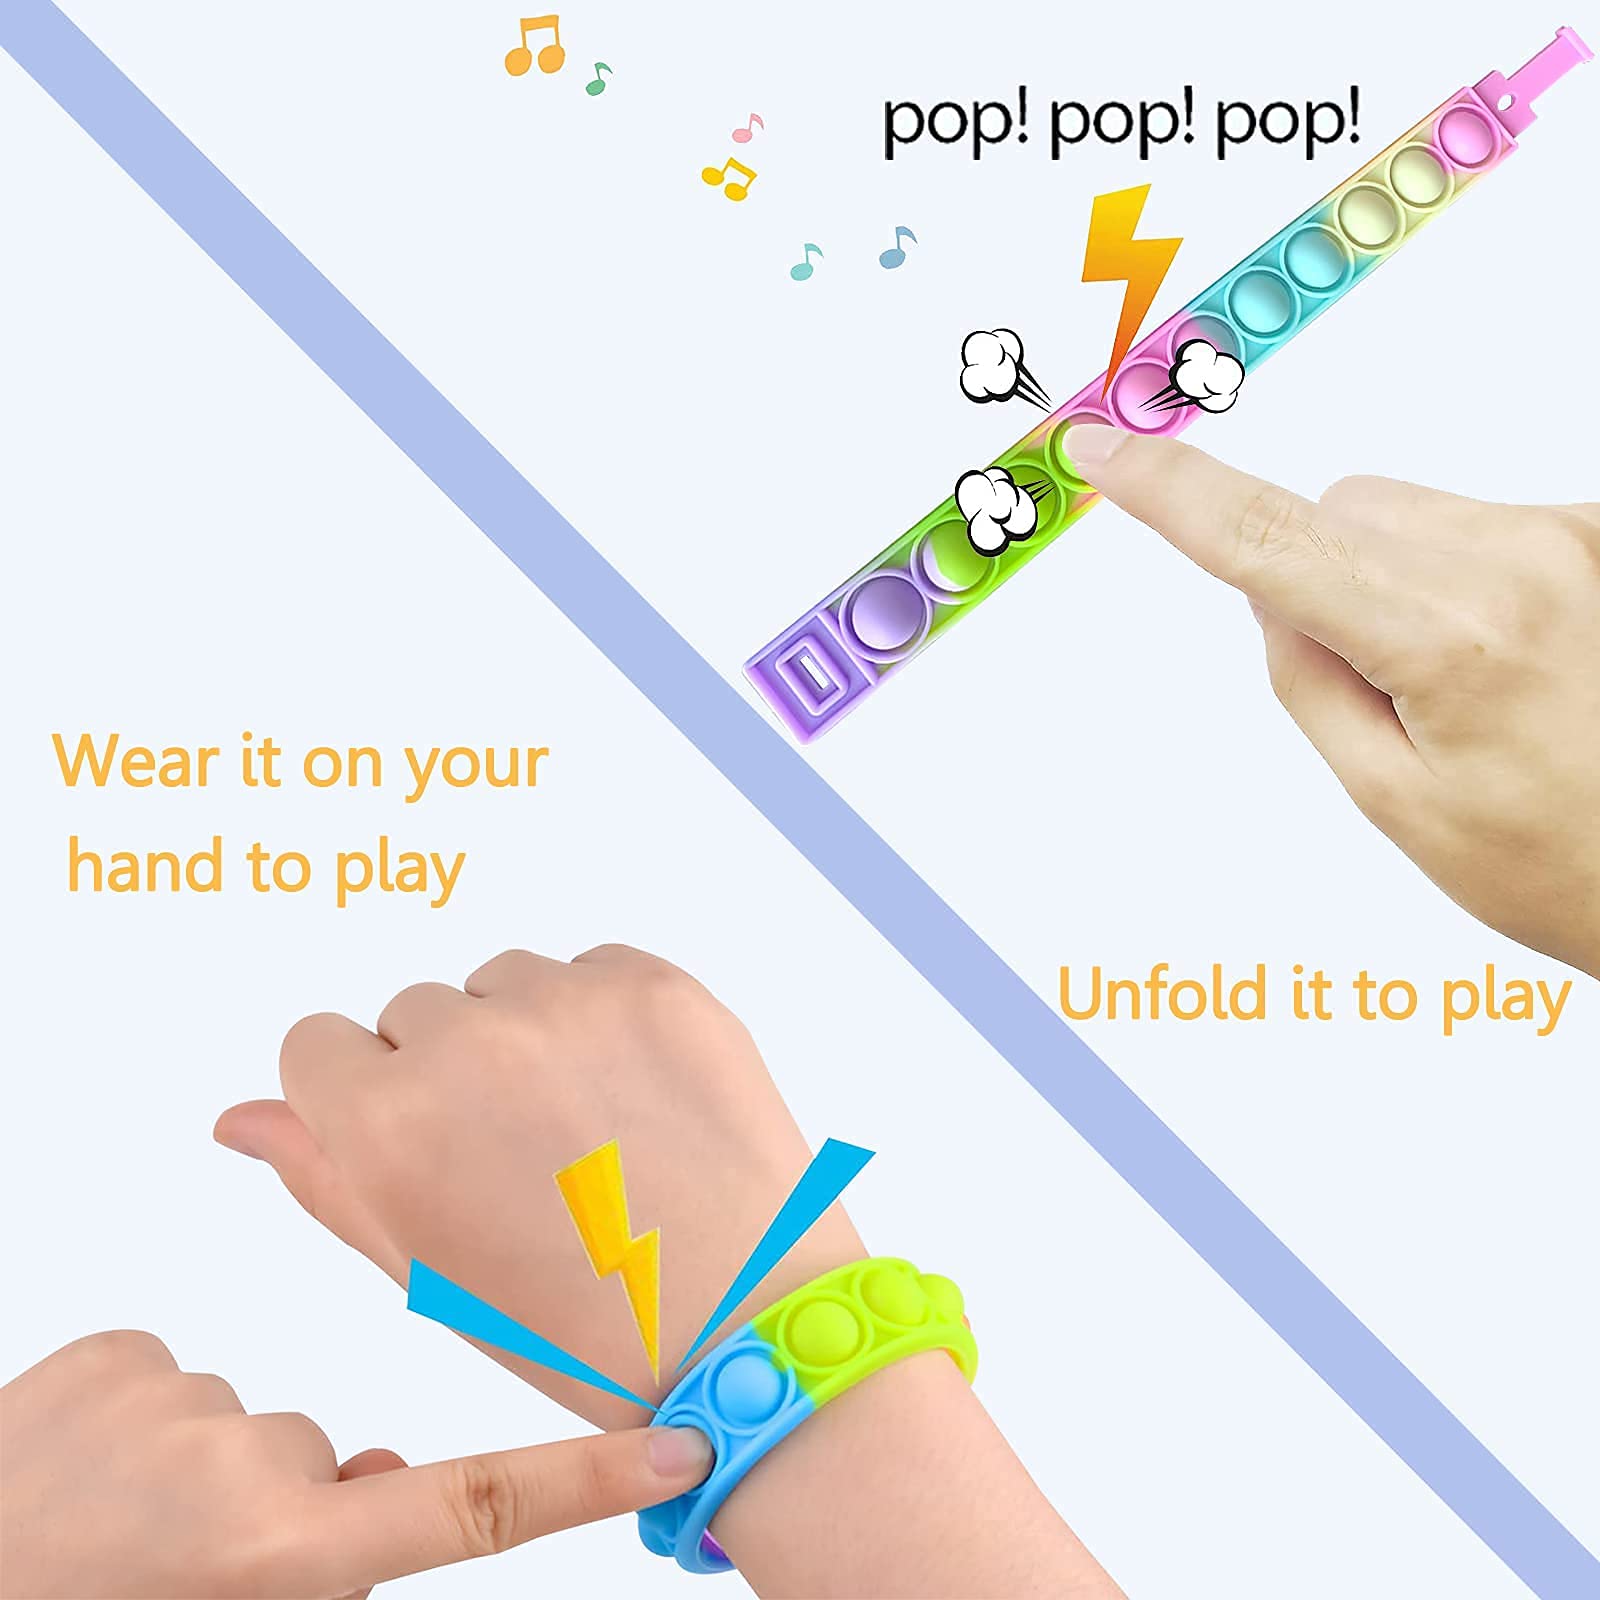 12PCS Push Pop Fidget Toy Fidget Bracelet, Durable and Adjustable, Multicolor Stress Relief Finger Press Bracelet for Kids and Adults ADHD ADD Autism (Option 1)